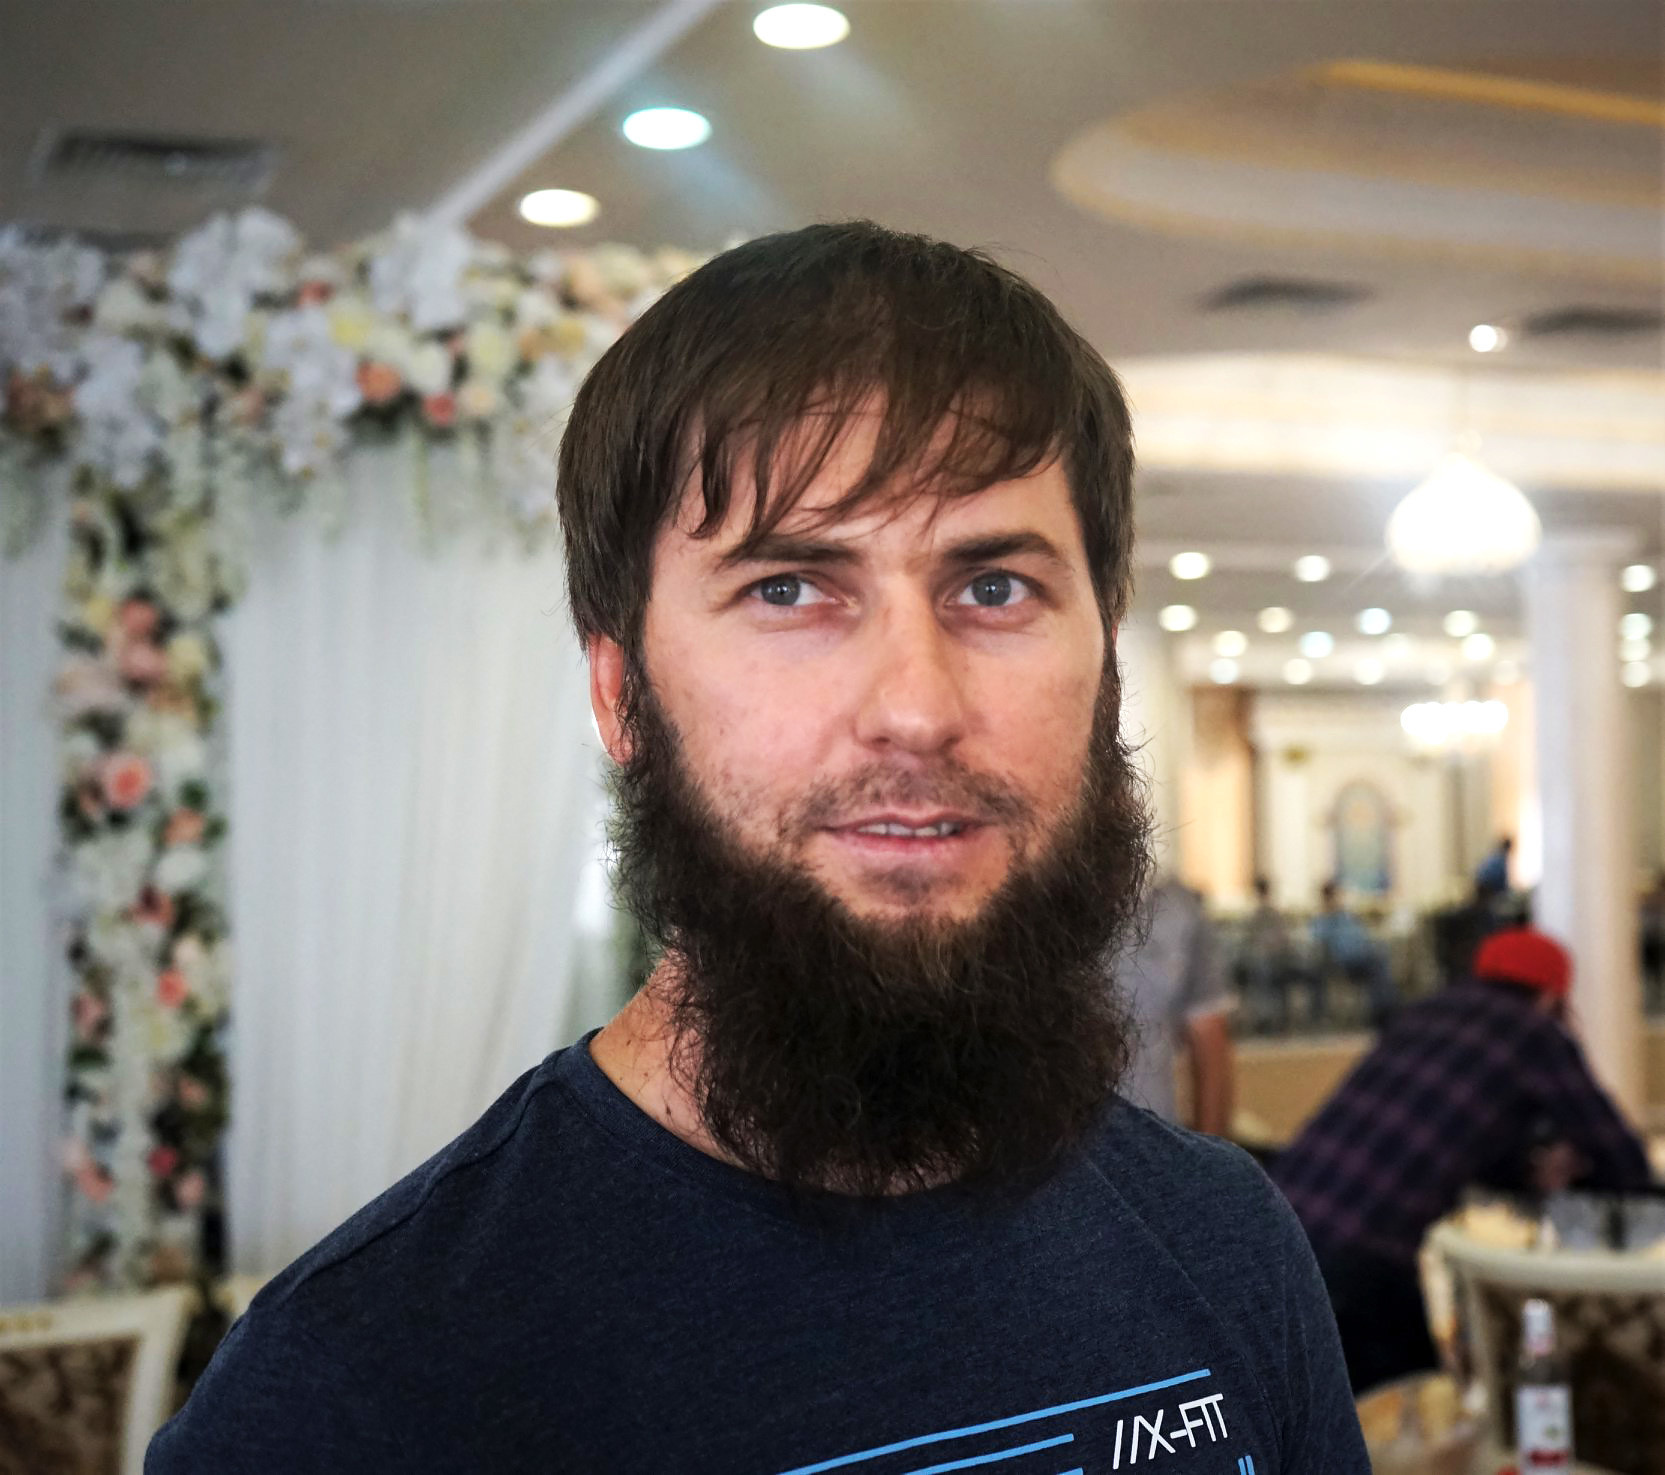 Abubaker, de Grozni, recuerda las dos guerras chechenas, sobre todo cómo tuvo que esconderse en los sótanos con su familia. Su primo murió cuando jugaba con municiones. Otro pariente murió en un bombardeo. Según él, ‘la gente no piensa ni habla de la guerra, todo el mundo intenta olvidarla’.